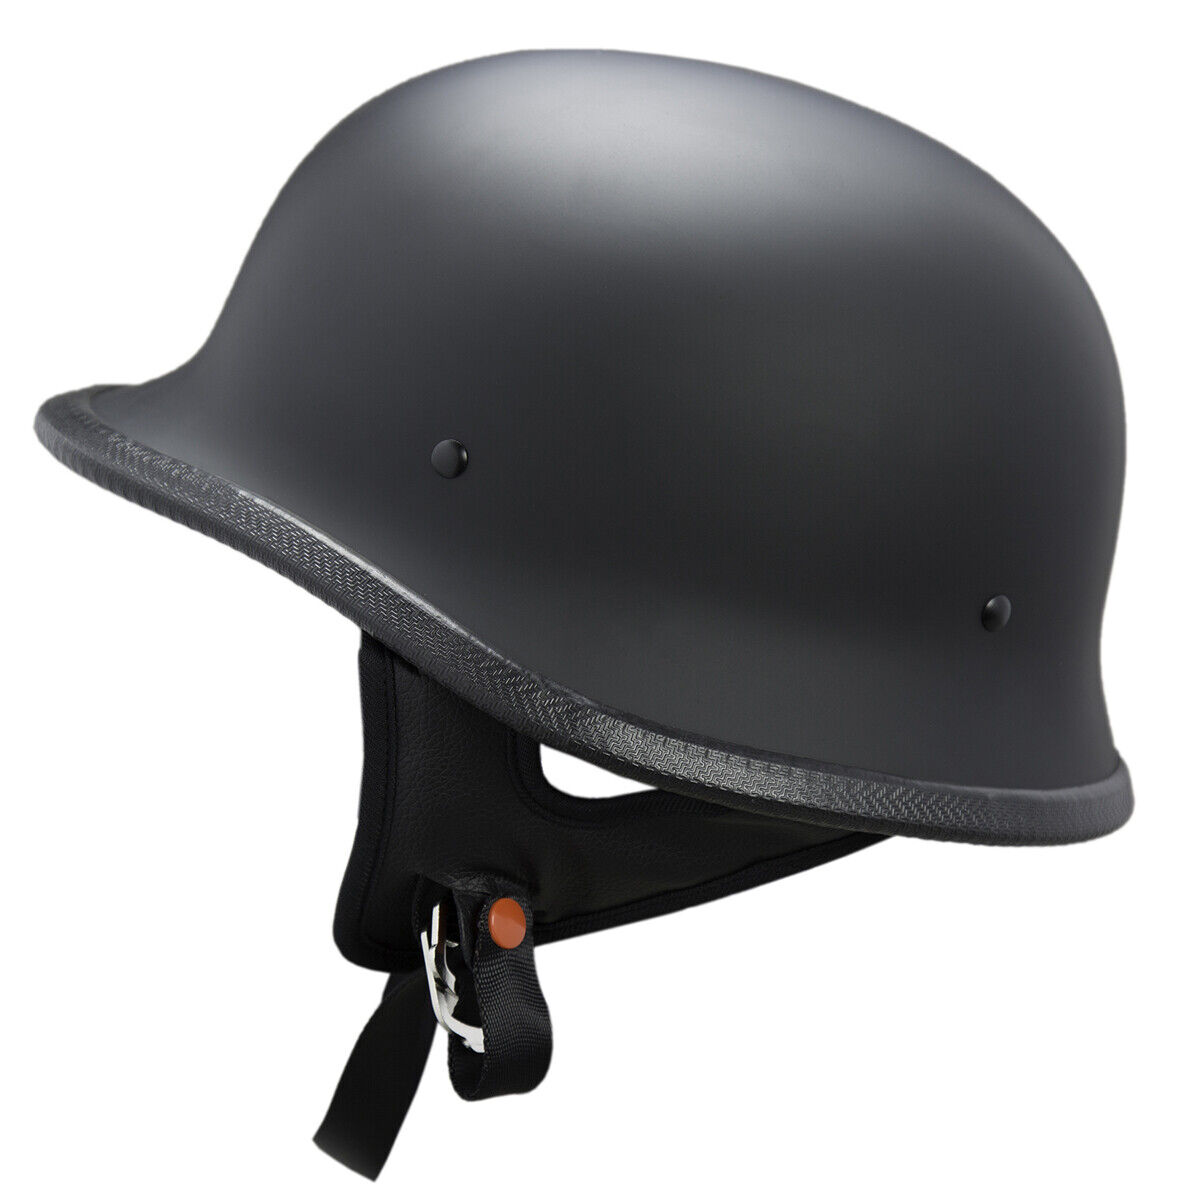 German Style Shorty Helmet Dot Approved Adult CarbonFiber Motorcycle Half Helmet